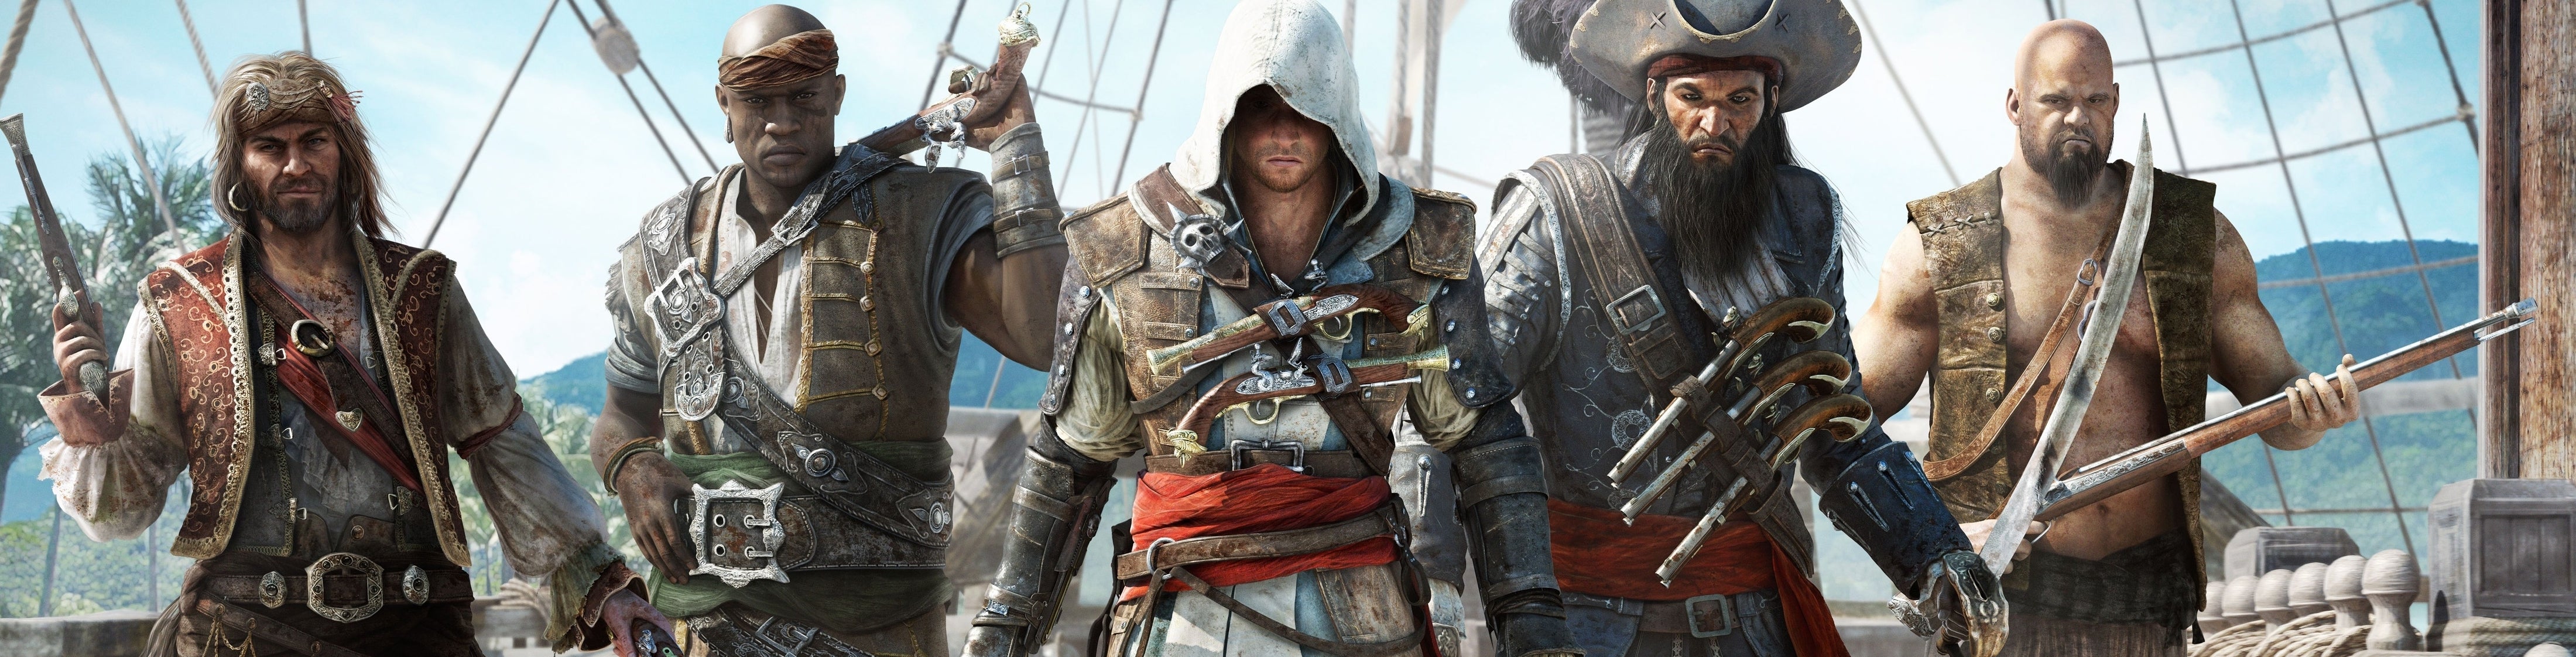 Imagem para Confronto Next-Gen: Assassin's Creed 4